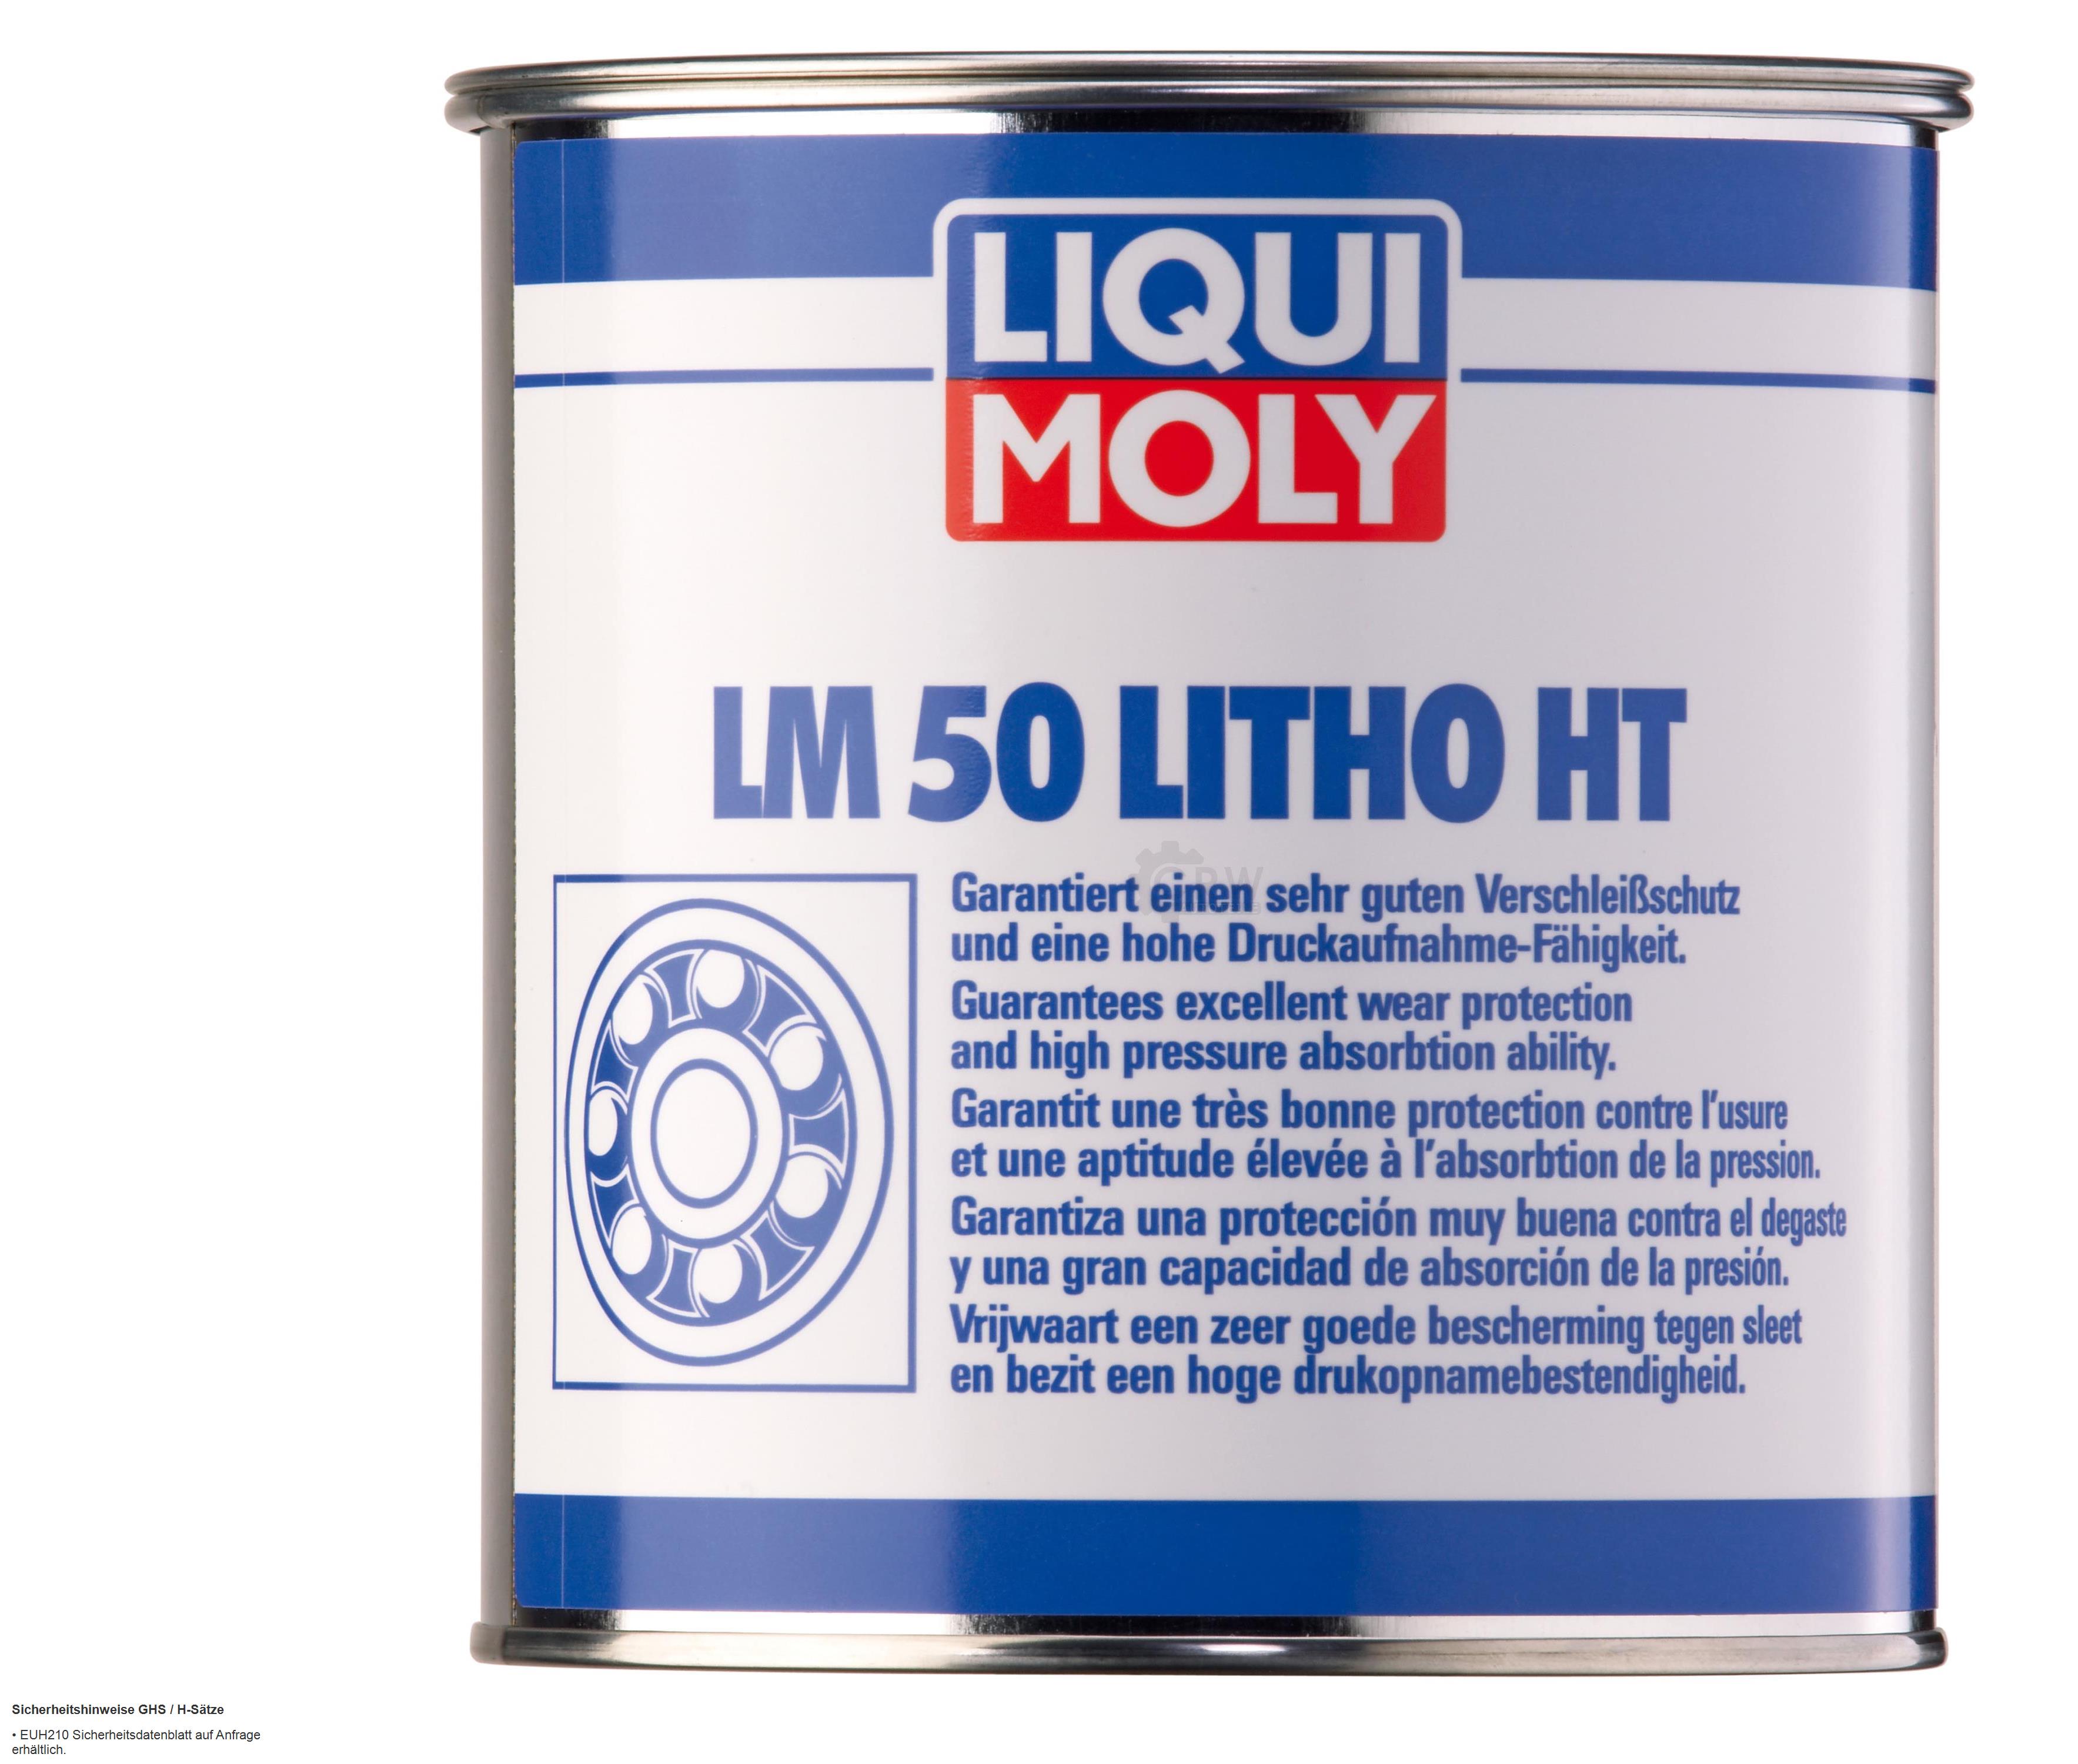 Liqui Moly LM 50 Litho HT Verschleißschutz Schmierfett Schmierstoff 1kg